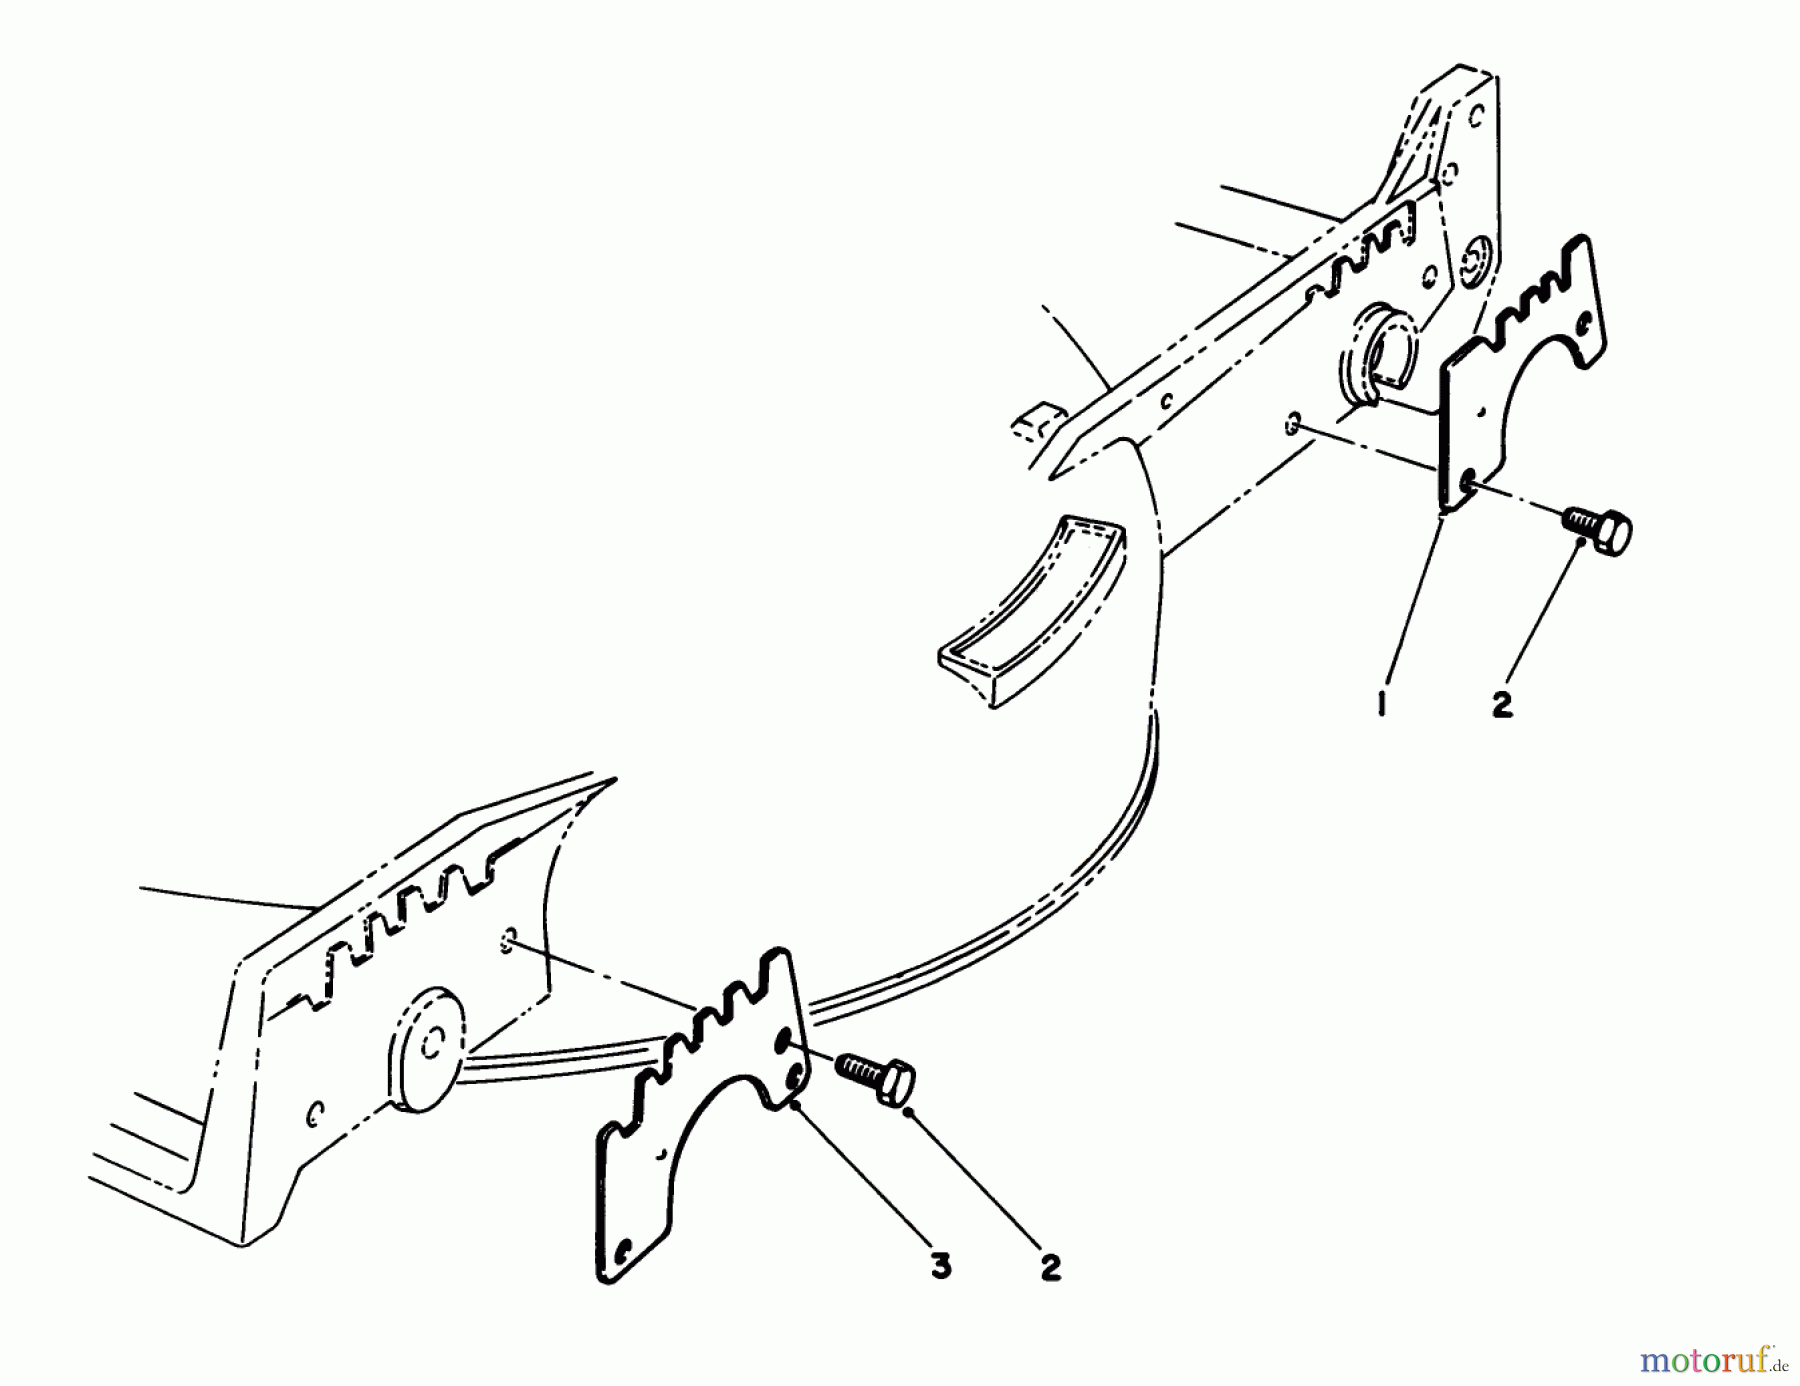  Toro Neu Mowers, Walk-Behind Seite 1 20628C - Toro Lawnmower, 1988 (8000001-8999999) WEAR PLATE KIT NO. 49-4080 (OPTIONAL)